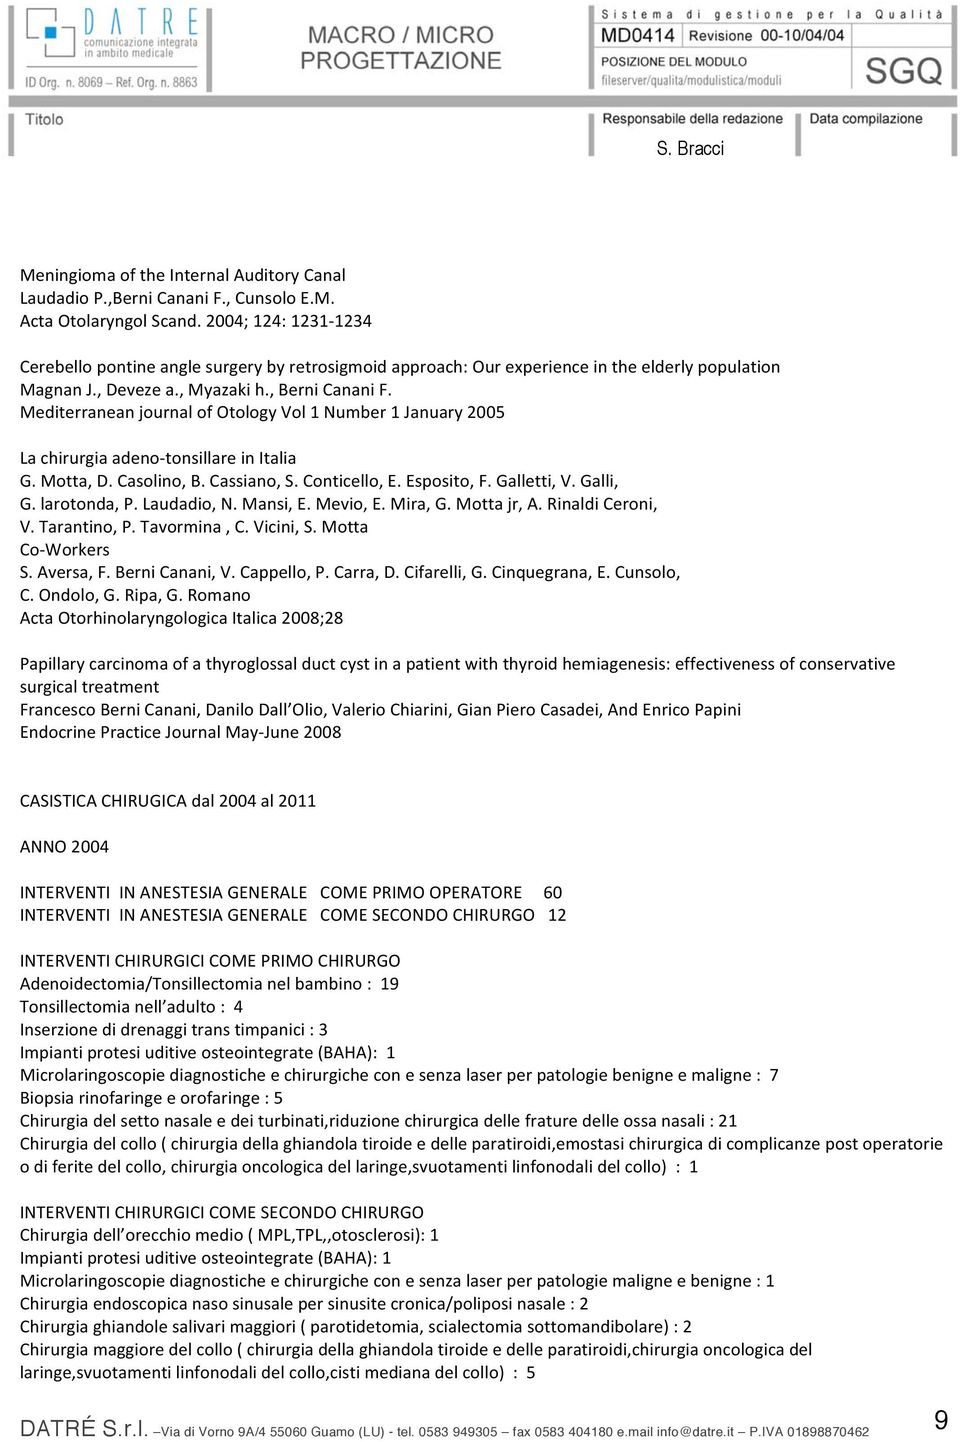 MediterraneanjournalofOtologyVol1Number1January2005 Lachirurgiaadeno tonsillareinitalia G.Motta,D.Casolino,B.Cassiano,S.Conticello,E.Esposito,F.Galletti,V.Galli, G.larotonda,P.Laudadio,N.Mansi,E.